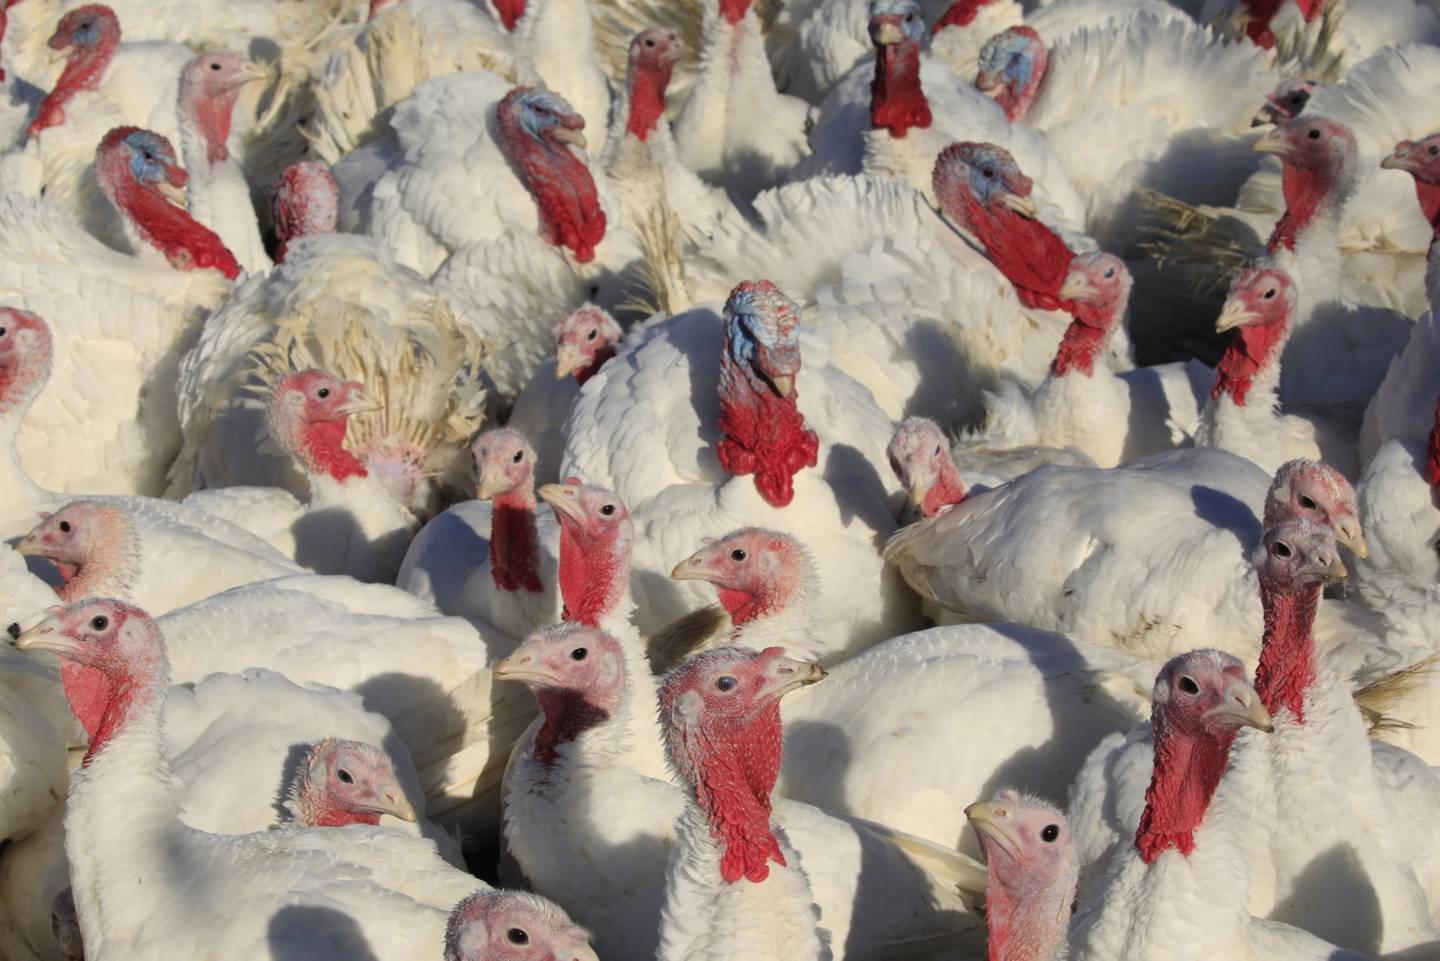 Más de 50 millones de pollos y pavos murieron a causa del virus altamente patógeno o fueron despoblados durante un brote anterior entre 2014 y 2015.